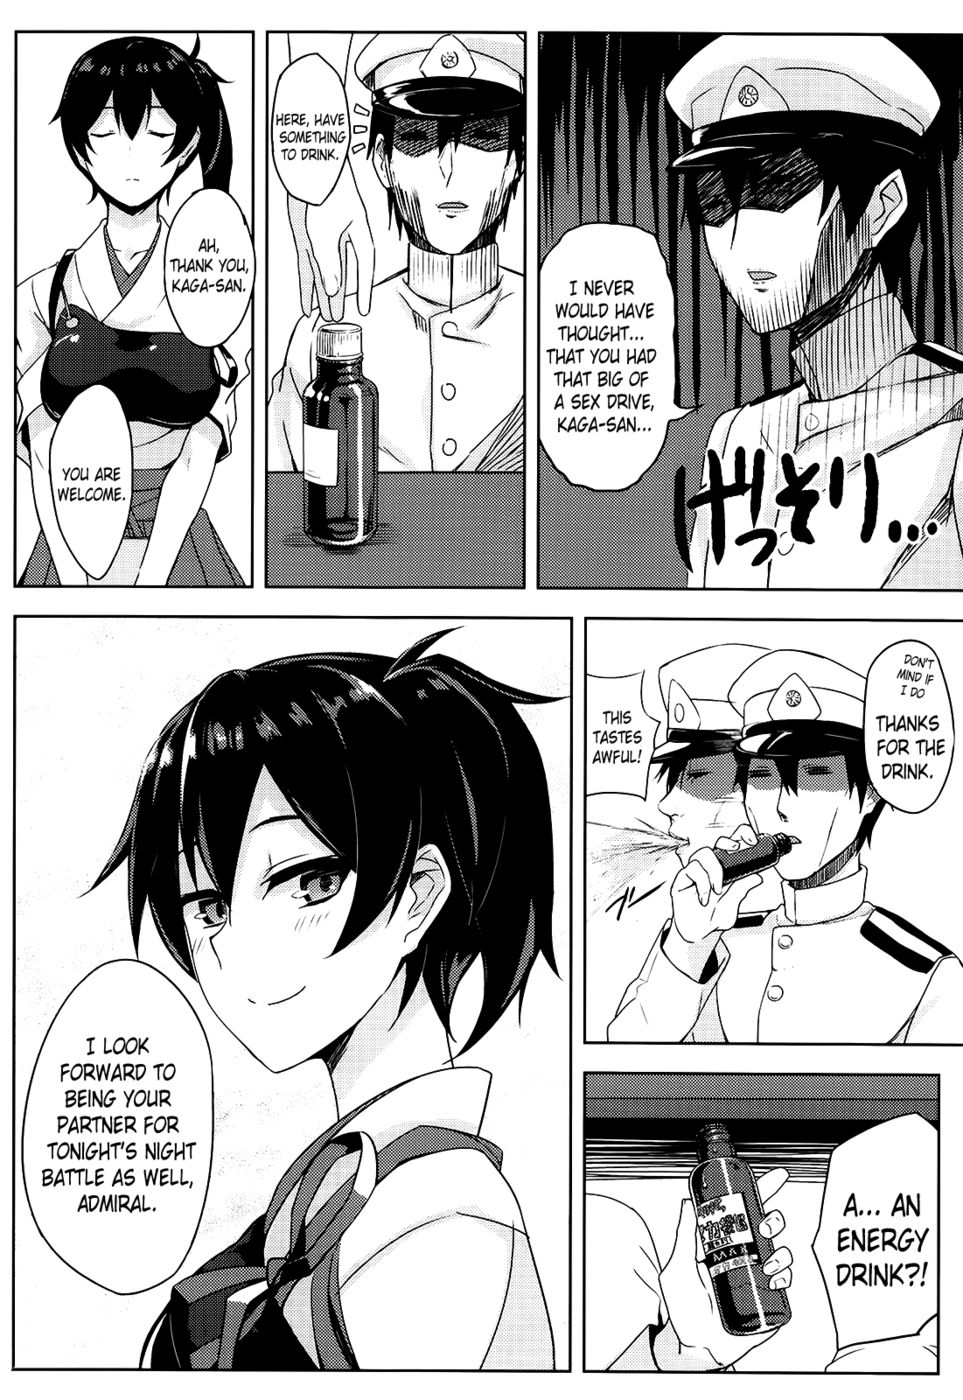 Hentai Manga Comic-Secretary Ship - Kaga's Worries-Read-21